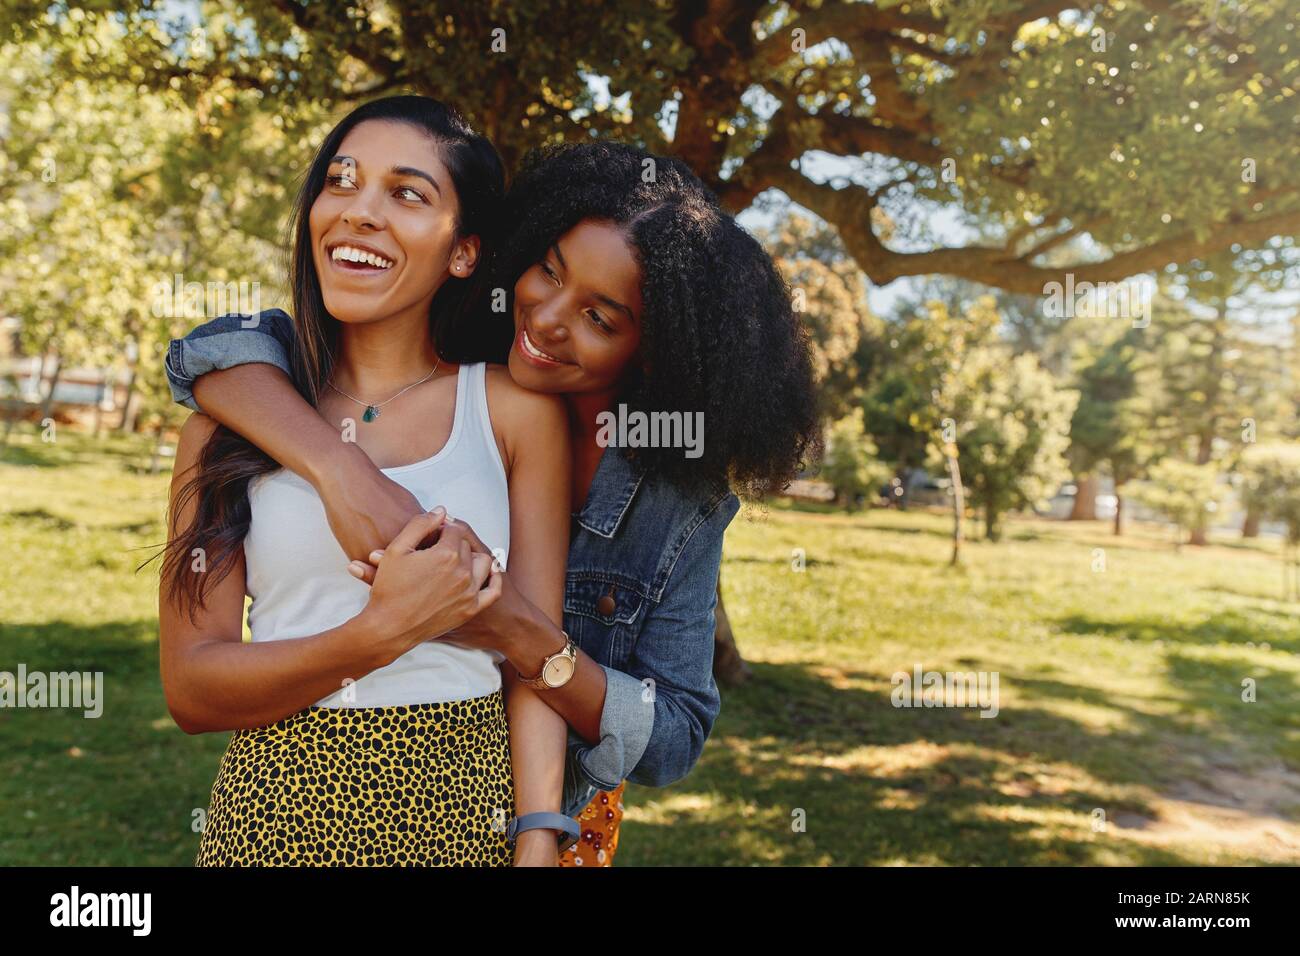 Jeune femme africaine américaine embrassant son ami montrant l'amour et les soins dans le parc - deux belles femmes embrassant dehors Banque D'Images